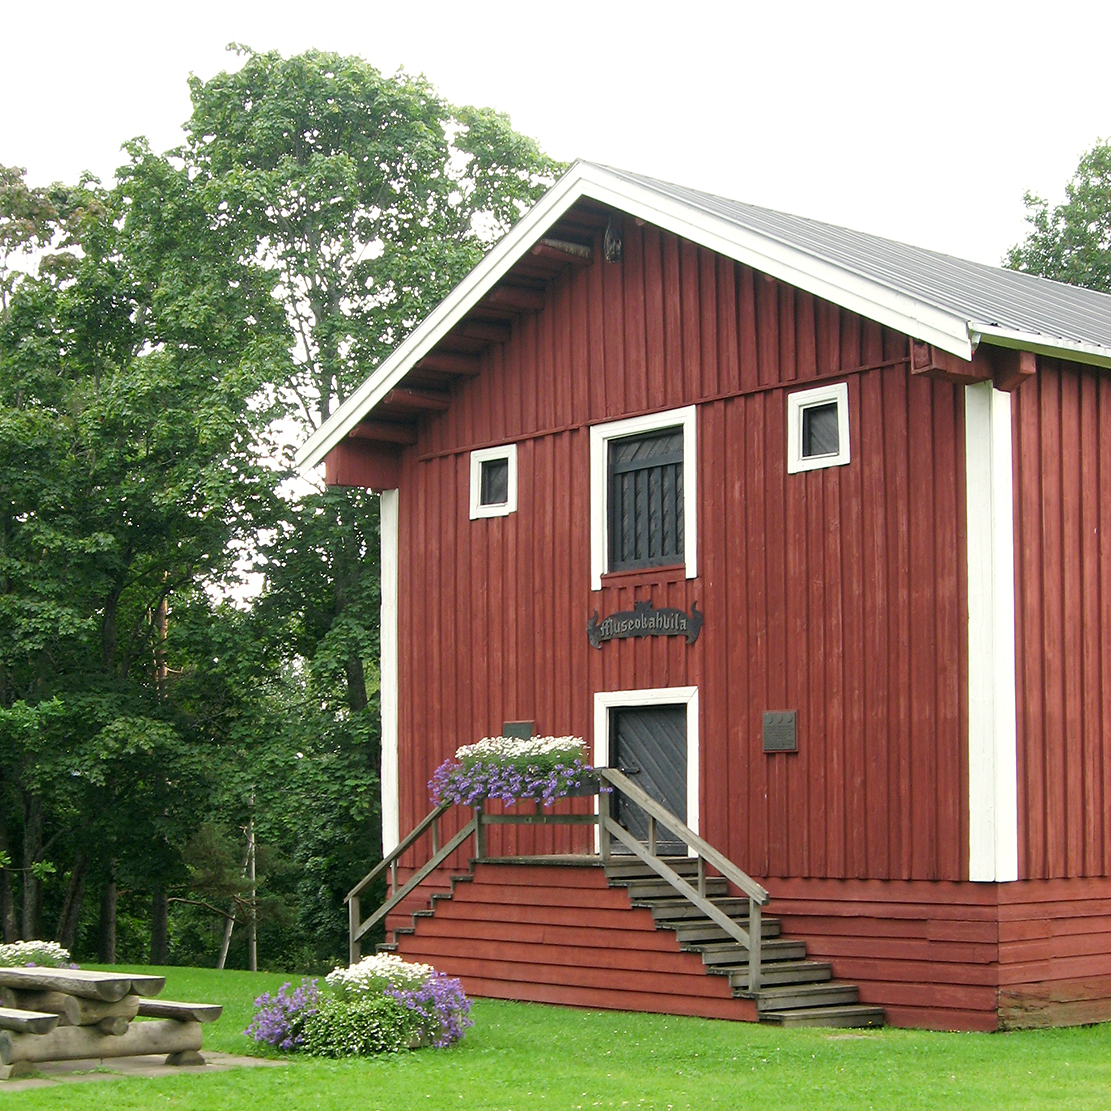 Nurmijärven kirkon museokahvila ja tapuli ovat vanhoja, punamullan värisiä puurakennuksia.